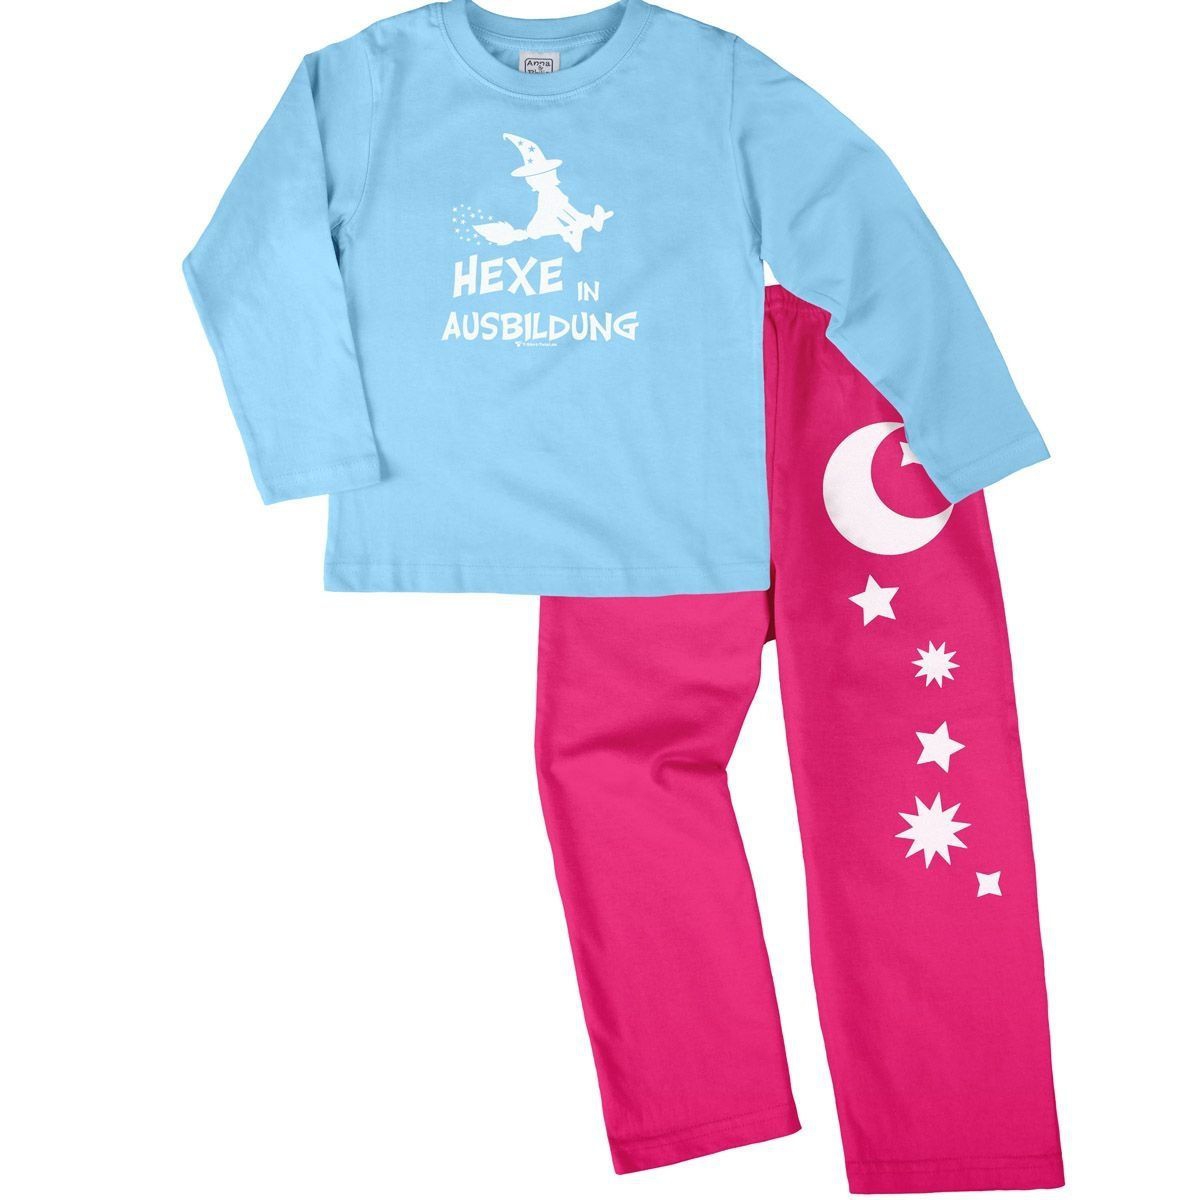 Hexe in Ausbildung Pyjama Set hellblau / pink 110 / 116